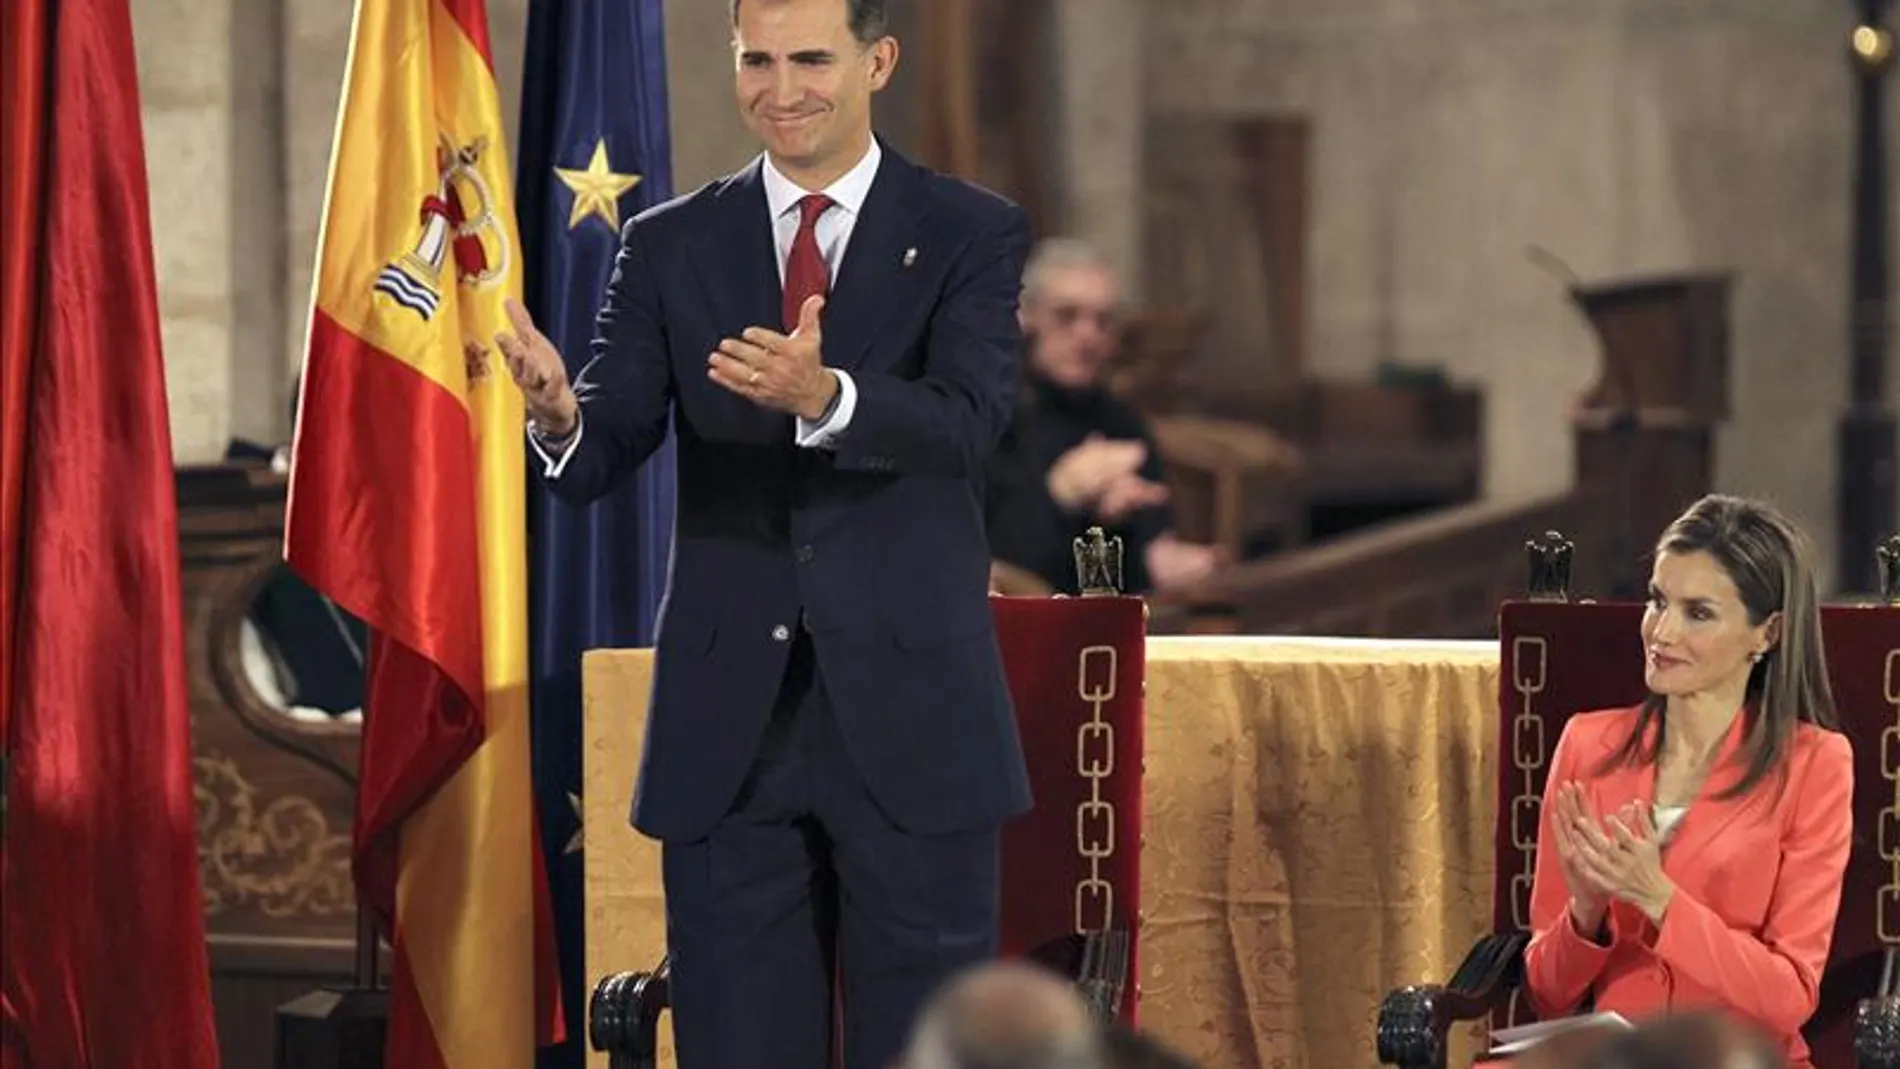 Don Felipe dedicará sus fuerzas "a servir a España como nación unida y diversa"